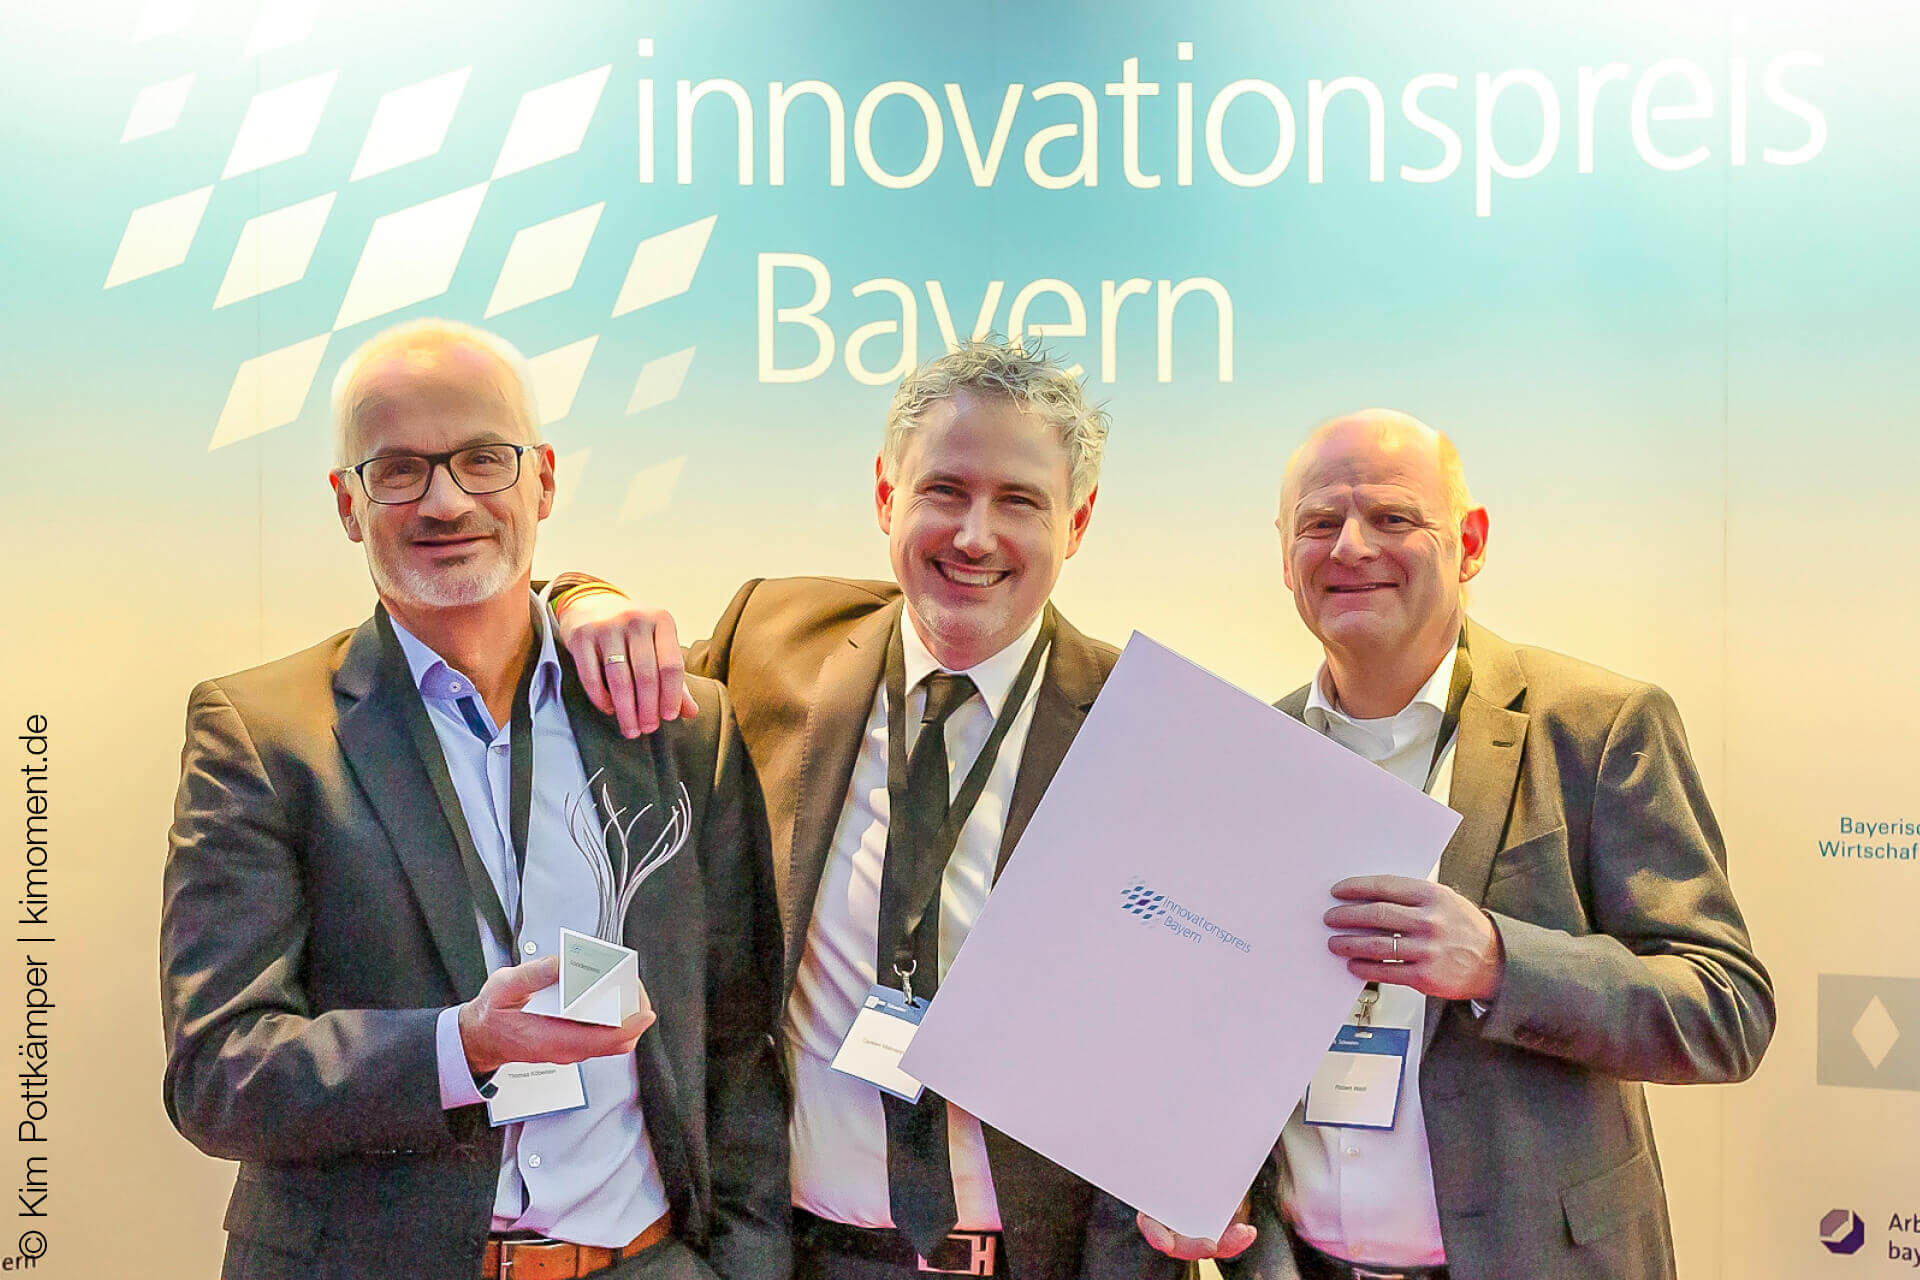 Freuen sich gemeinsam über den Innovationspreis Bayern: Thomas Köberlein, der Geschäftsbereichsleiter von Schreiner ProTech, Dr. Carsten Mahrenholz, CEO von Coldplasmatech, und Robert Weiß, Leiter des Technologie- und Innovationsmanagements bei der Schreiner Group.